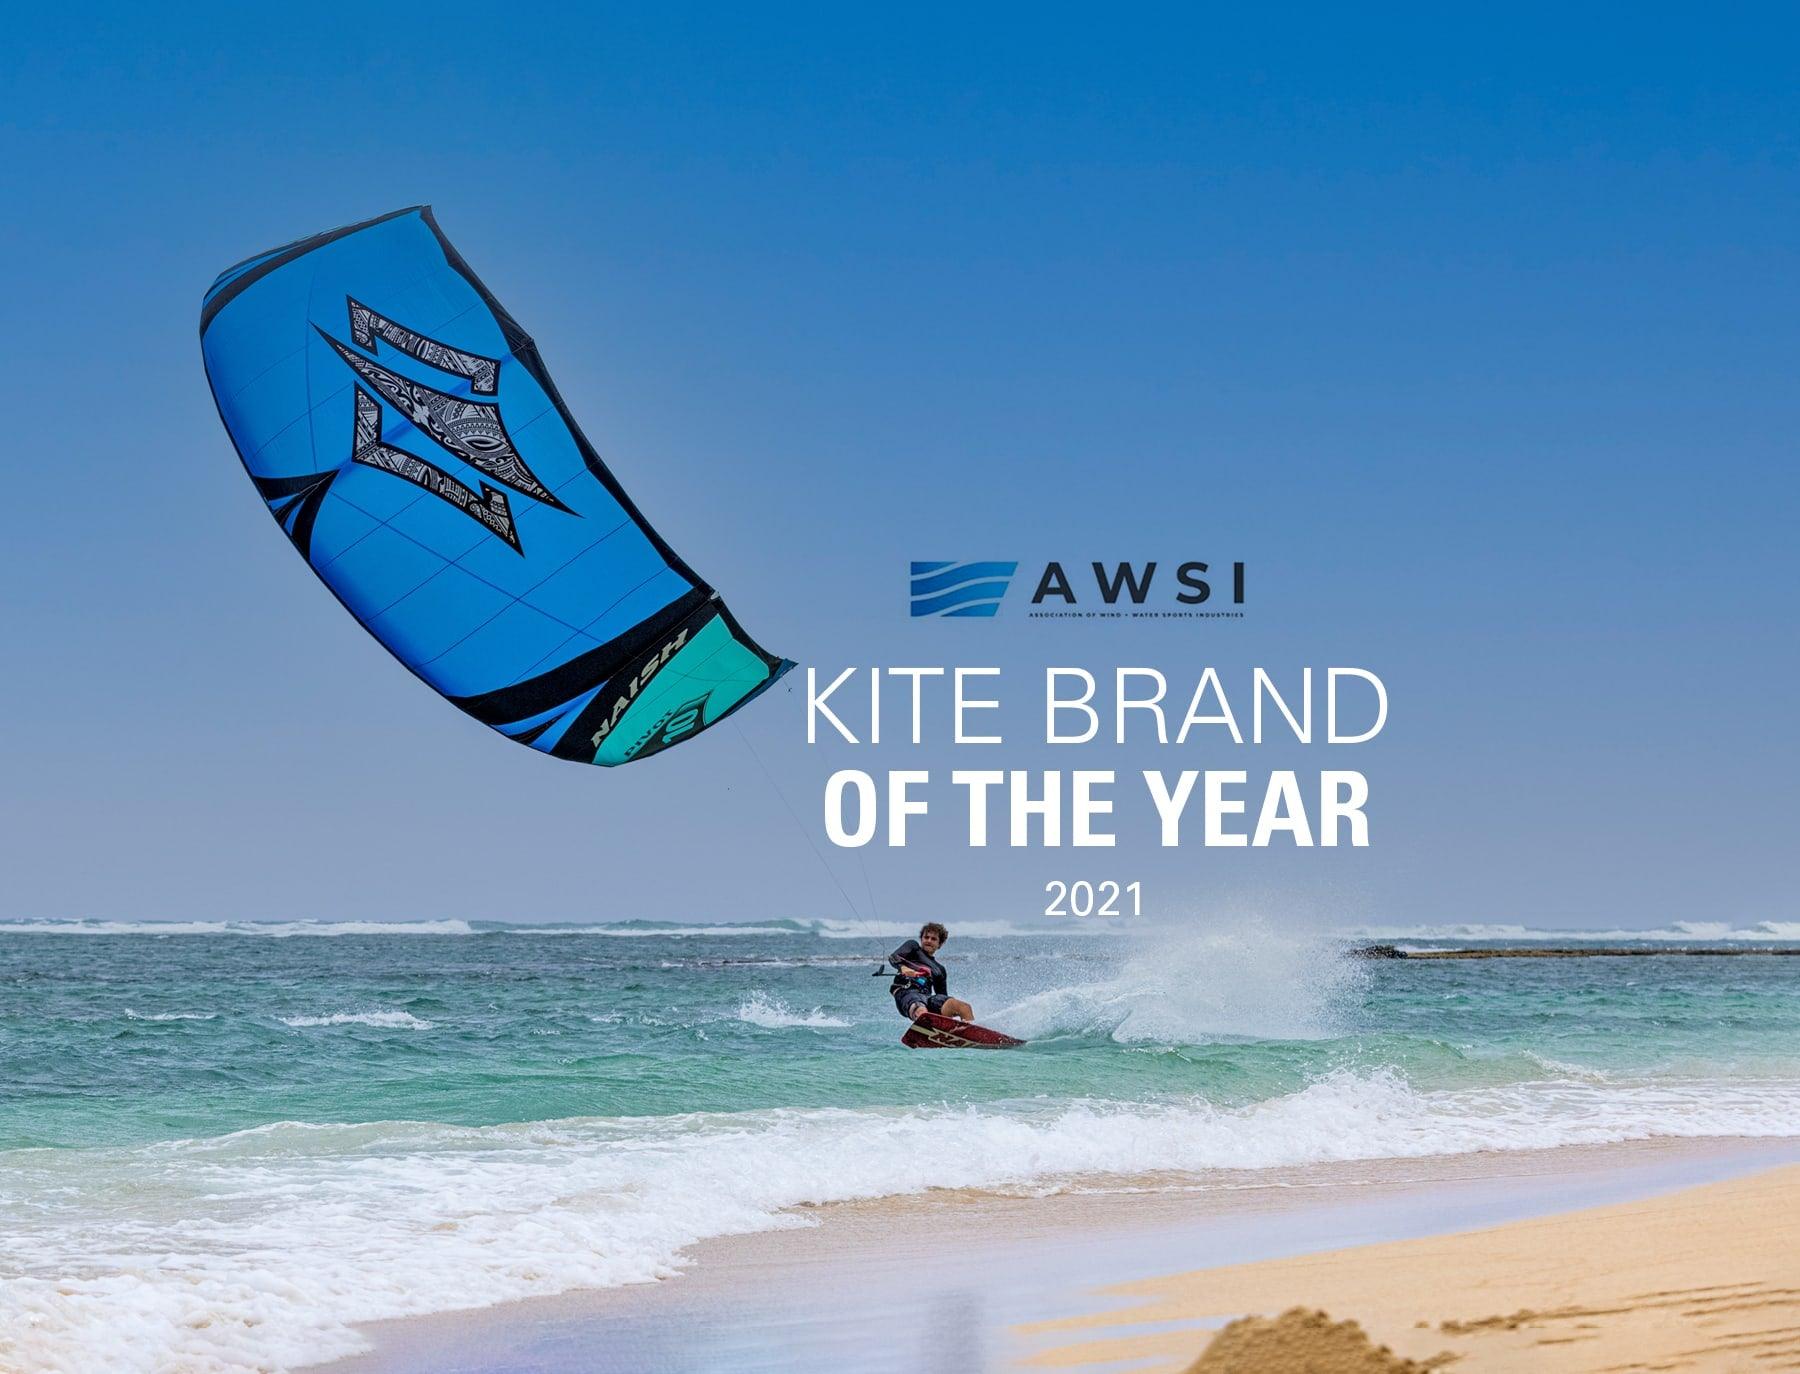 Naish is Voted AWSI's Kite Brand of the Year - Naish.com